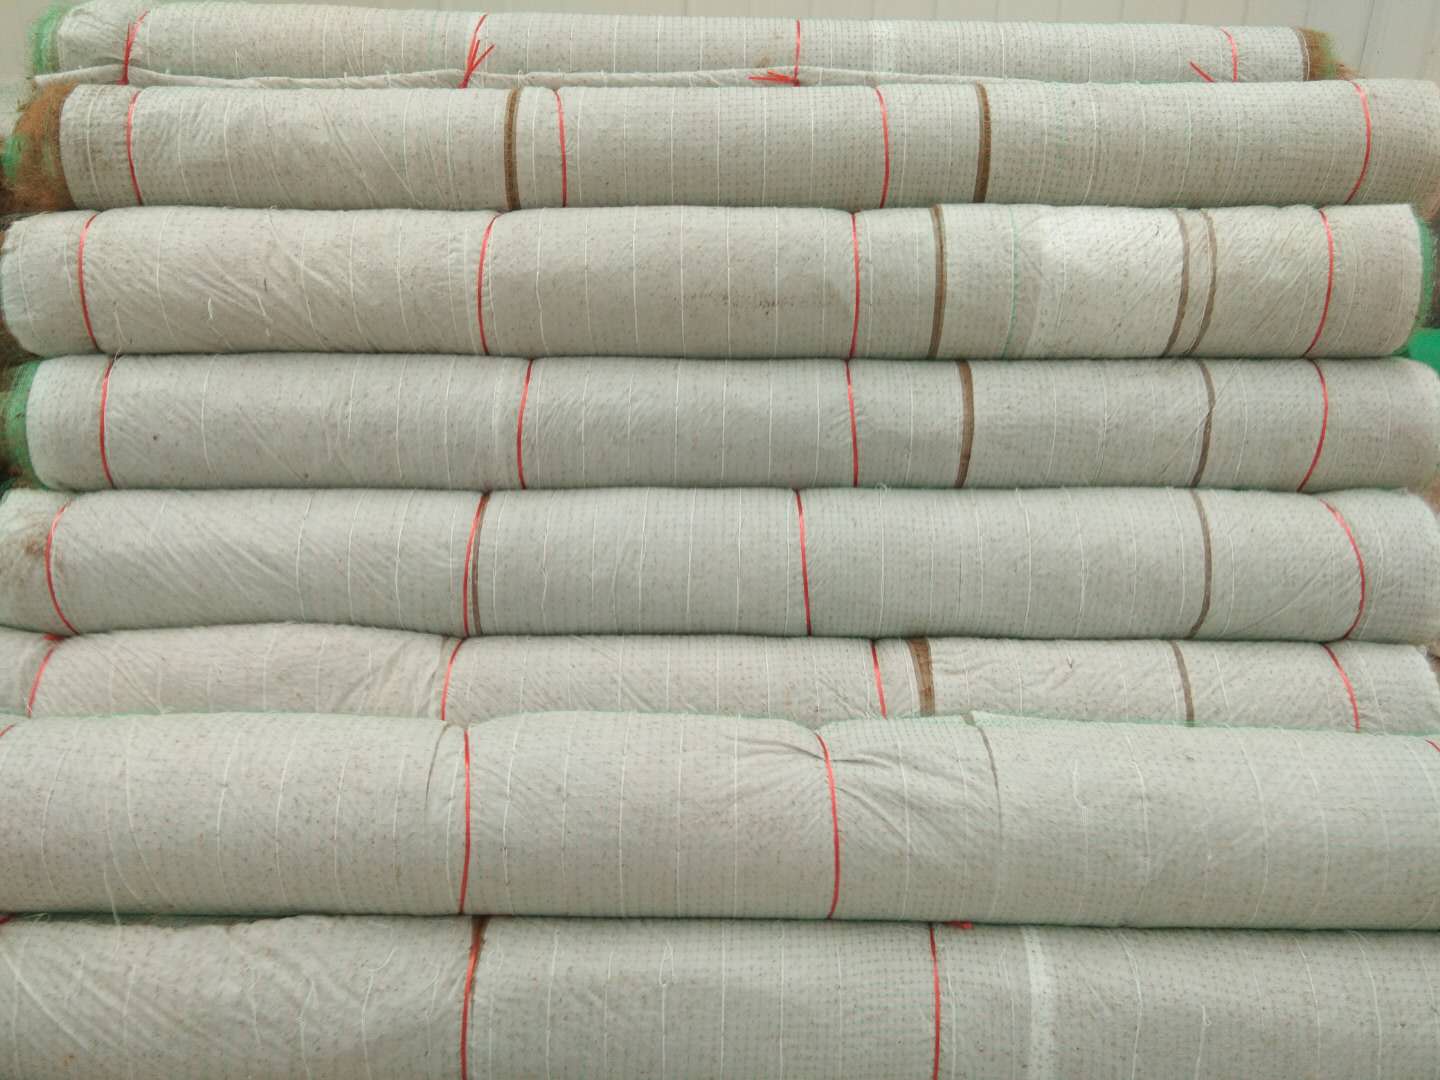 植物纤维毯@山东植物纤维毯生产厂家@优质植物纤维毯供应商@山东植物纤维毯品牌@山东优质植物纤维毯厂家报价